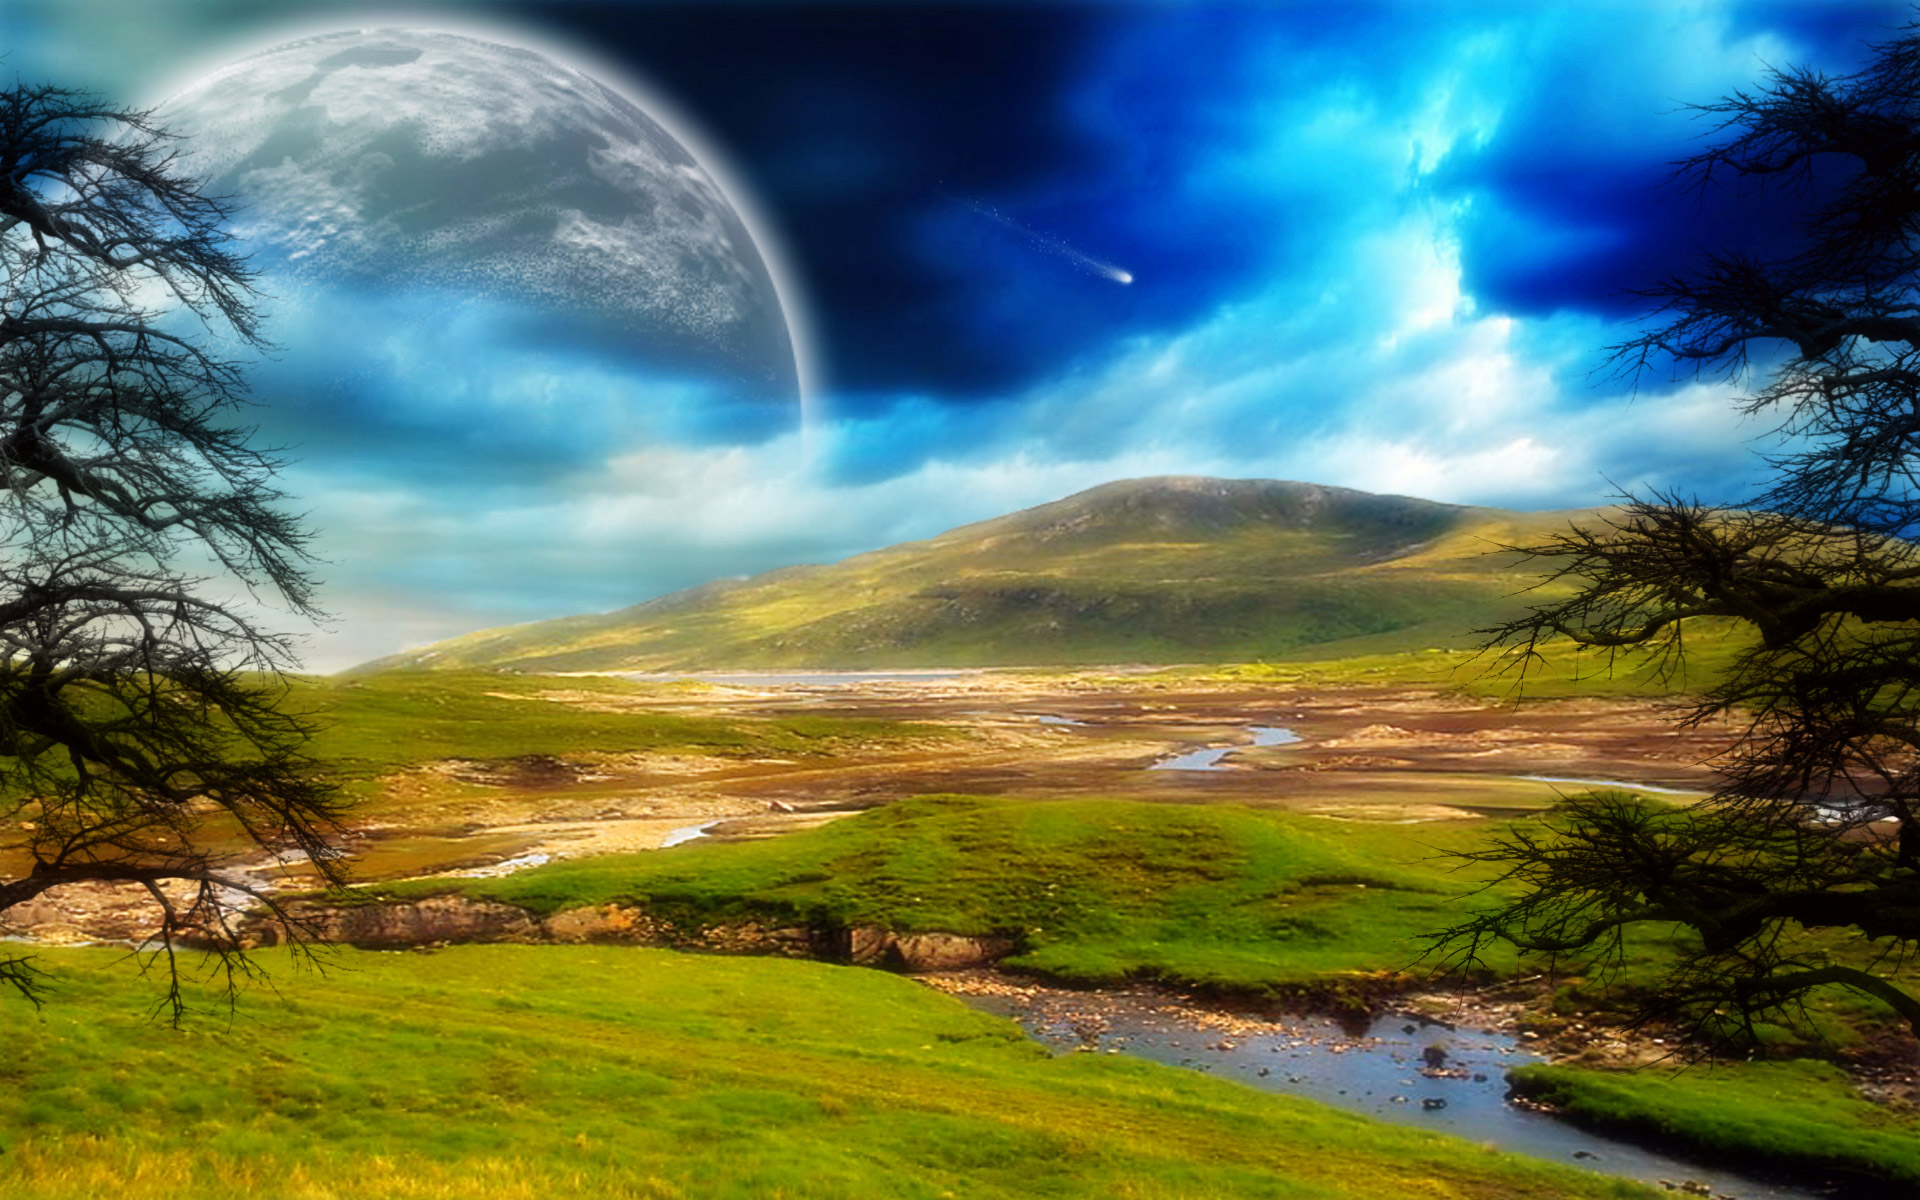 Moon Sci Fi Landscape 4K Digital Art Wallpapers